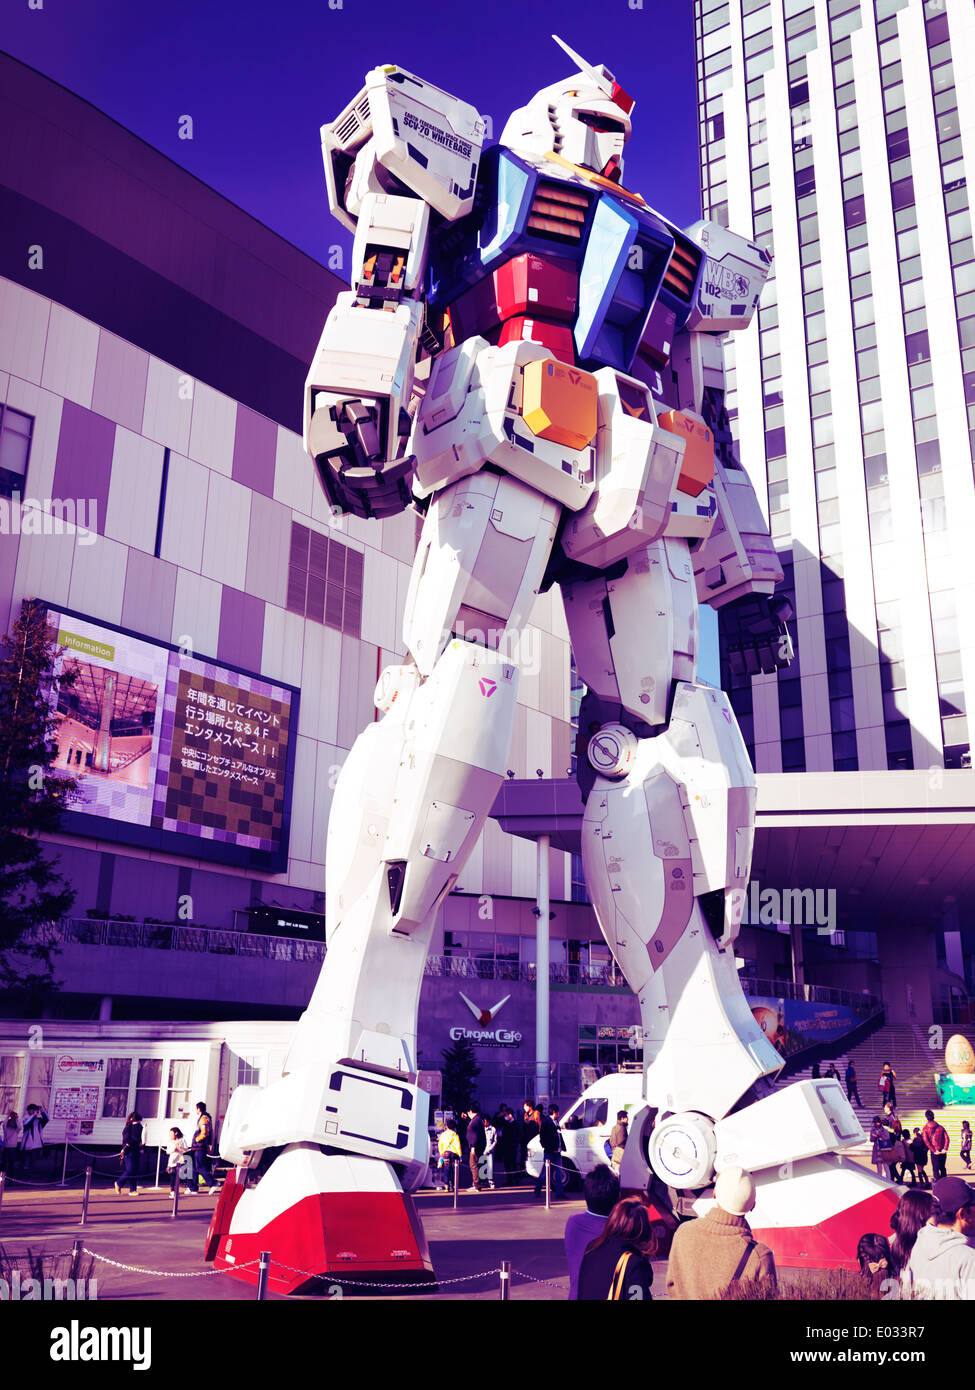 Gundam RX-78-2 gigantischen Roboter lebensgroße Statue vor Taucher Stadt, Odaiba, Tokio, Japan. Künstlerisch verarbeitet Foto. Stockfoto